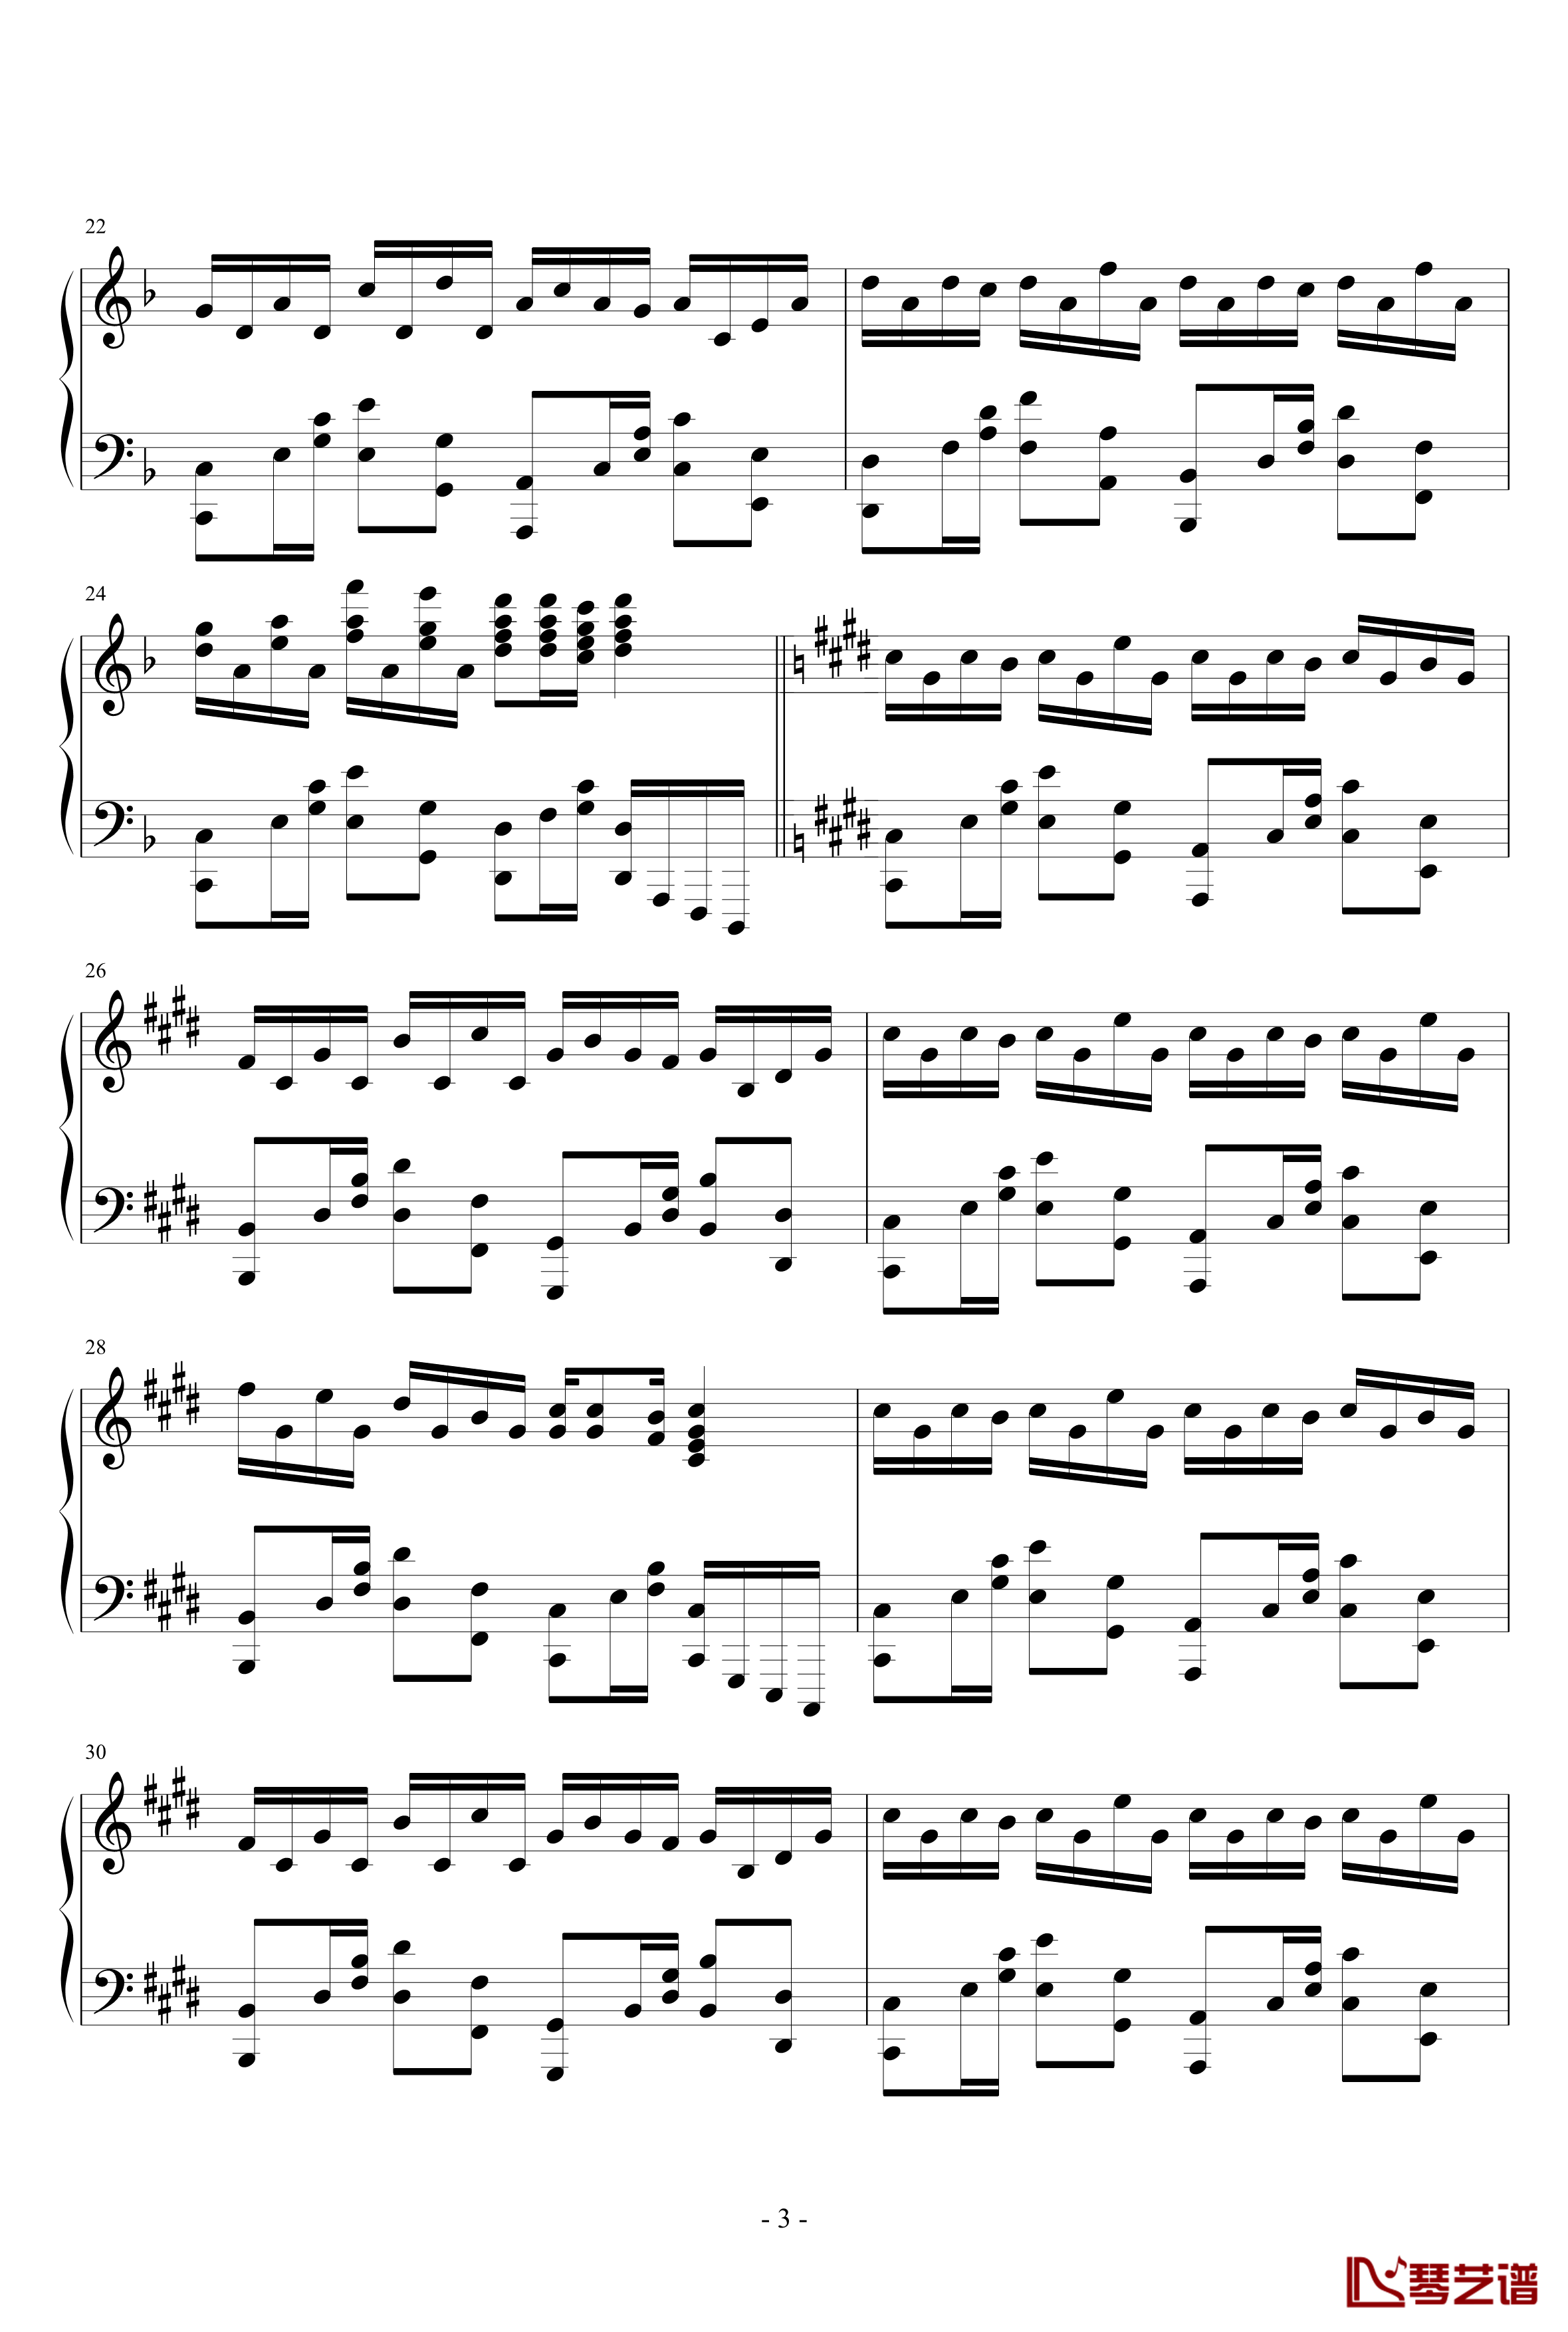 极品钢琴高手练习曲11钢琴谱-追月海-瑜乐星3